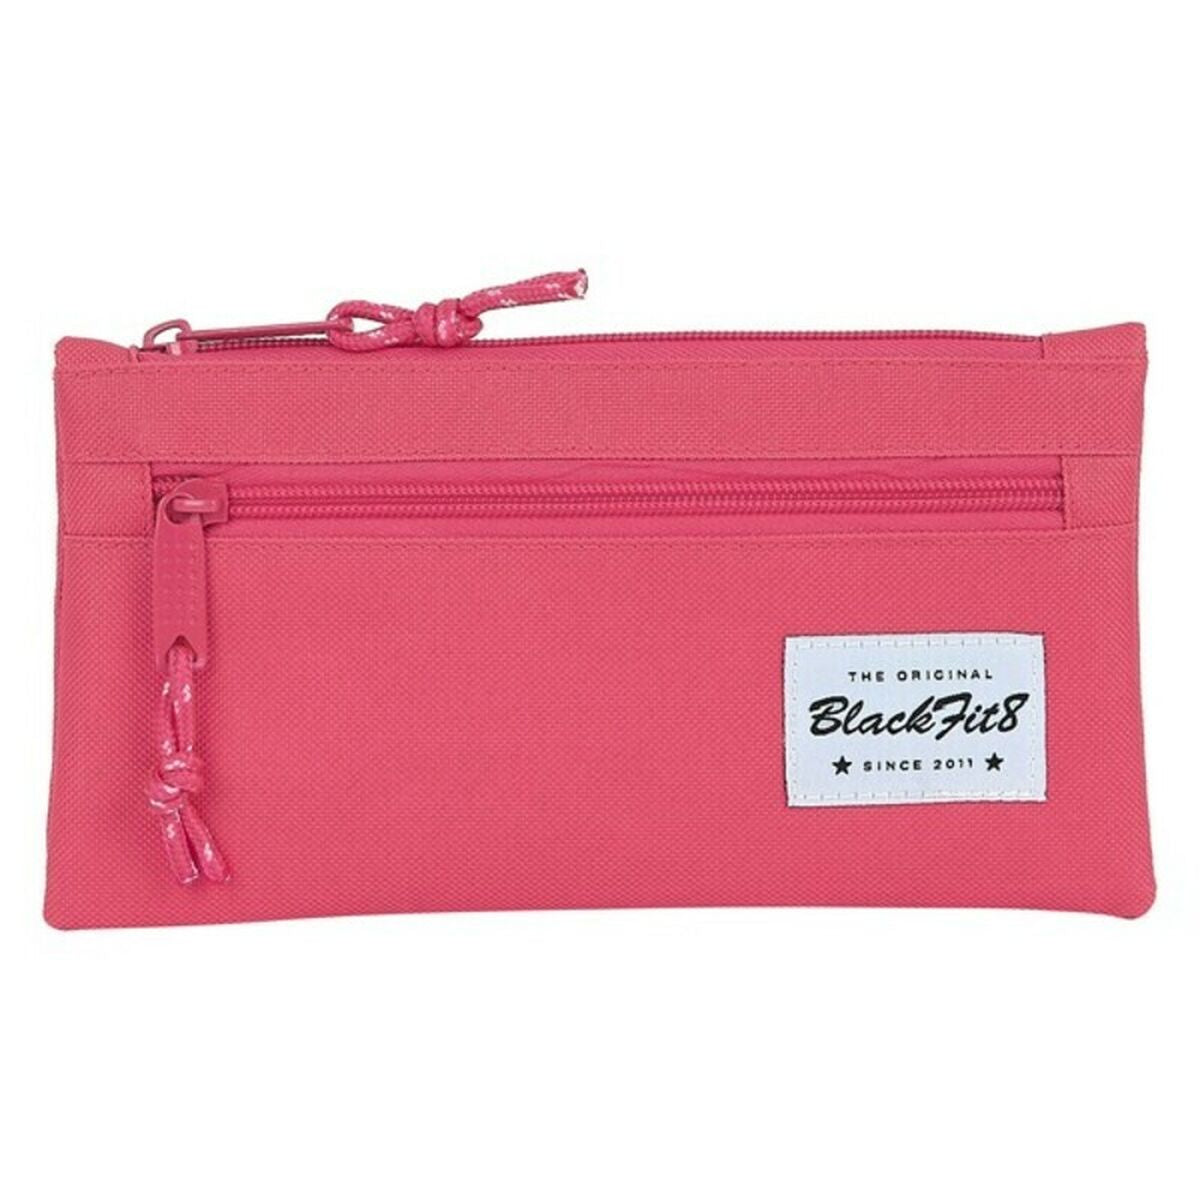 Bag BlackFit8 Rosa (22 x 11 x 1 cm)